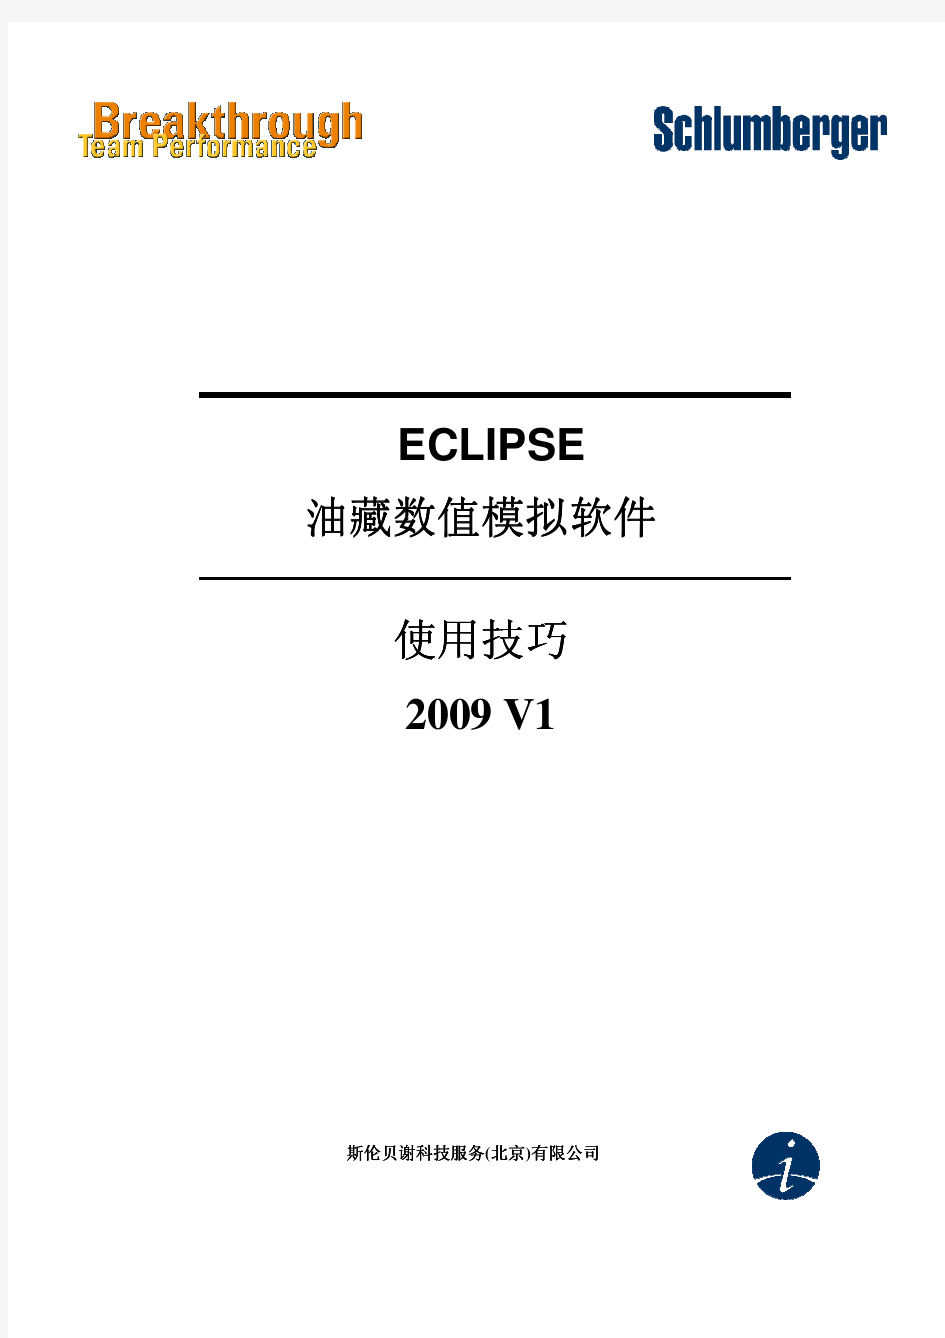 2010年斯伦贝谢最新Eclipse黑油模型提高培训资料(中文版)